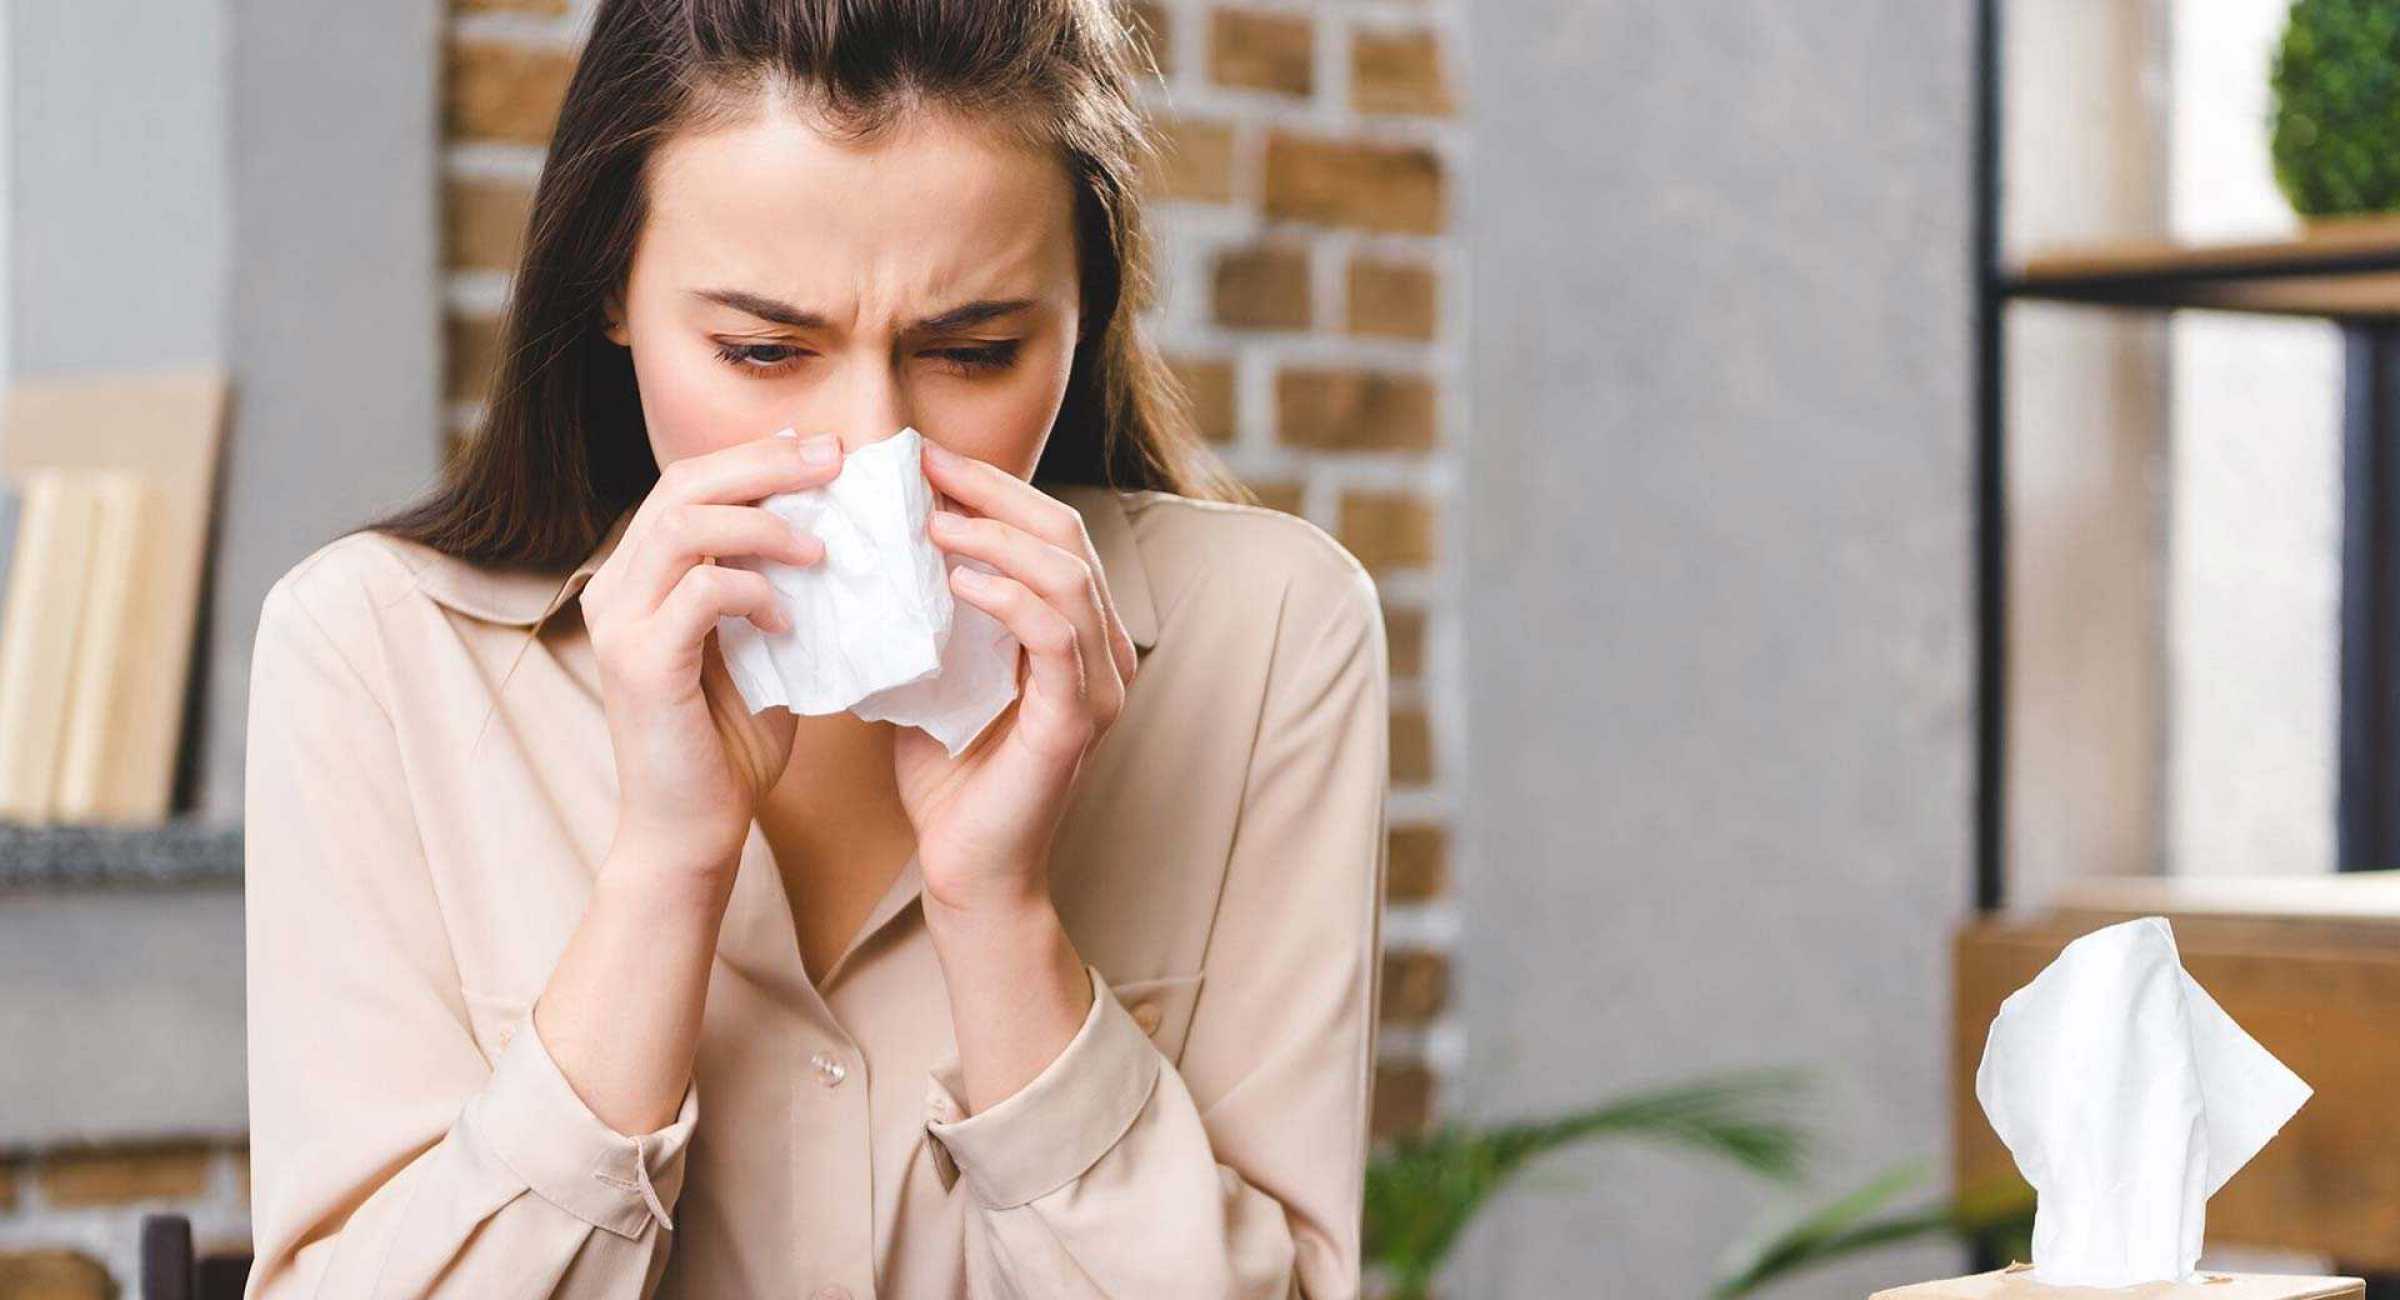 Аллергия на пыль: что делать, и кто виноват?